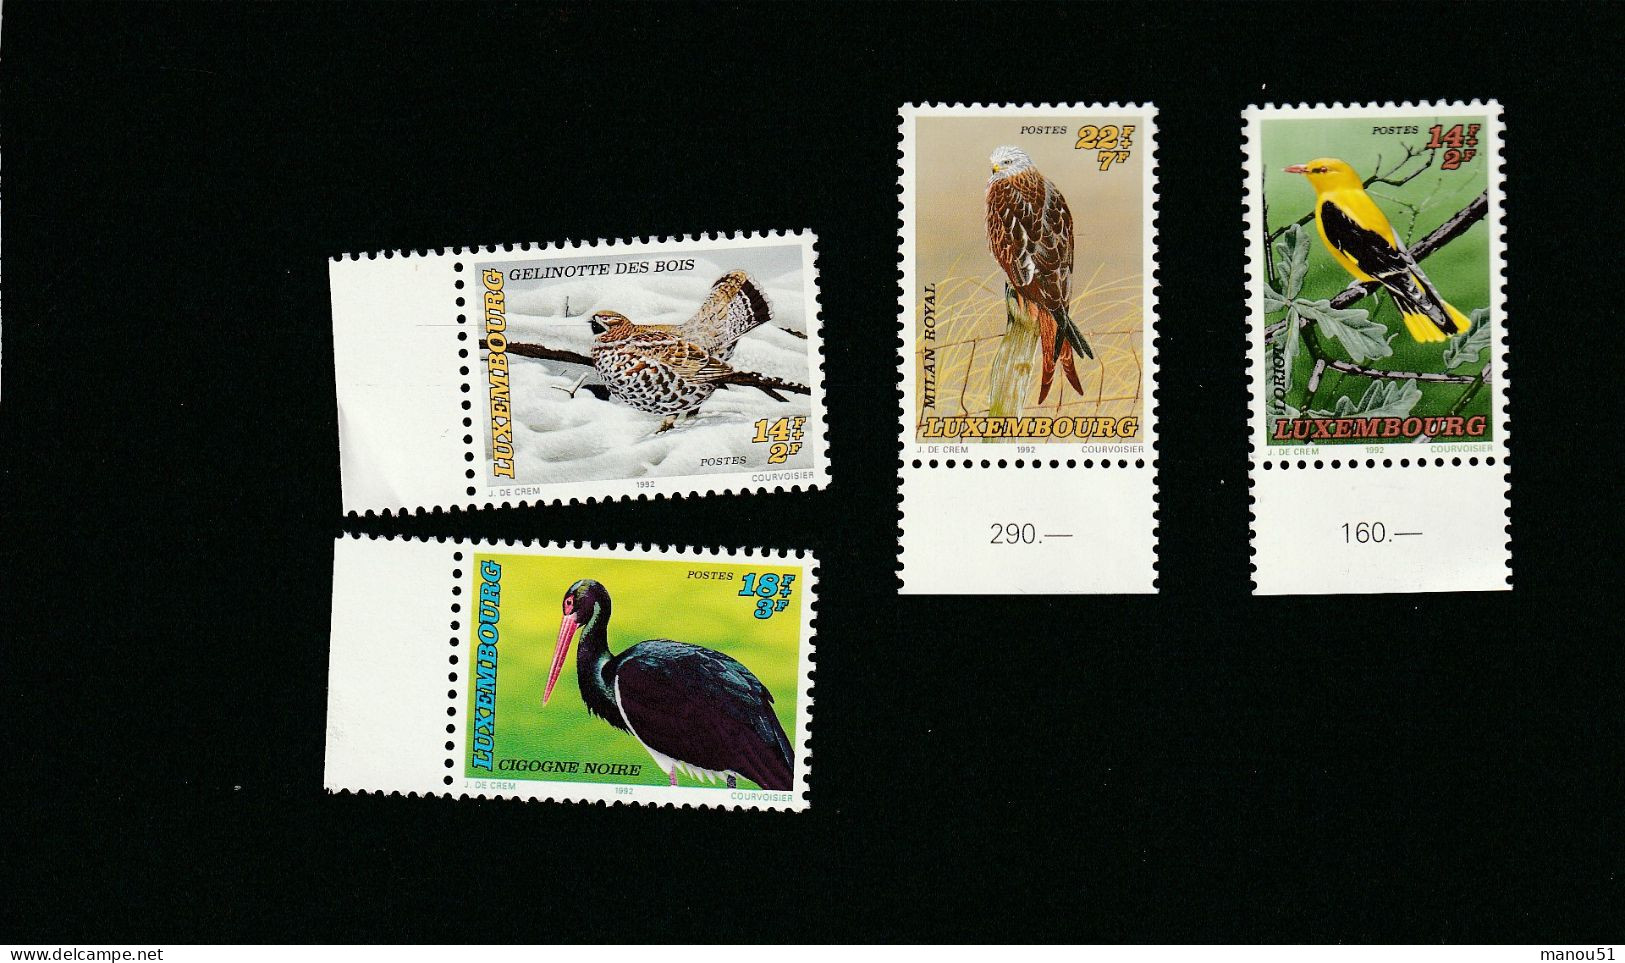 LUXEMBOURG - Timbres De Bienfaisance - Oiseaux Menacés - Emission Du 7.12.1992 - Lot 4 Timbres + 1 Enveloppe 1er Jour - Unused Stamps